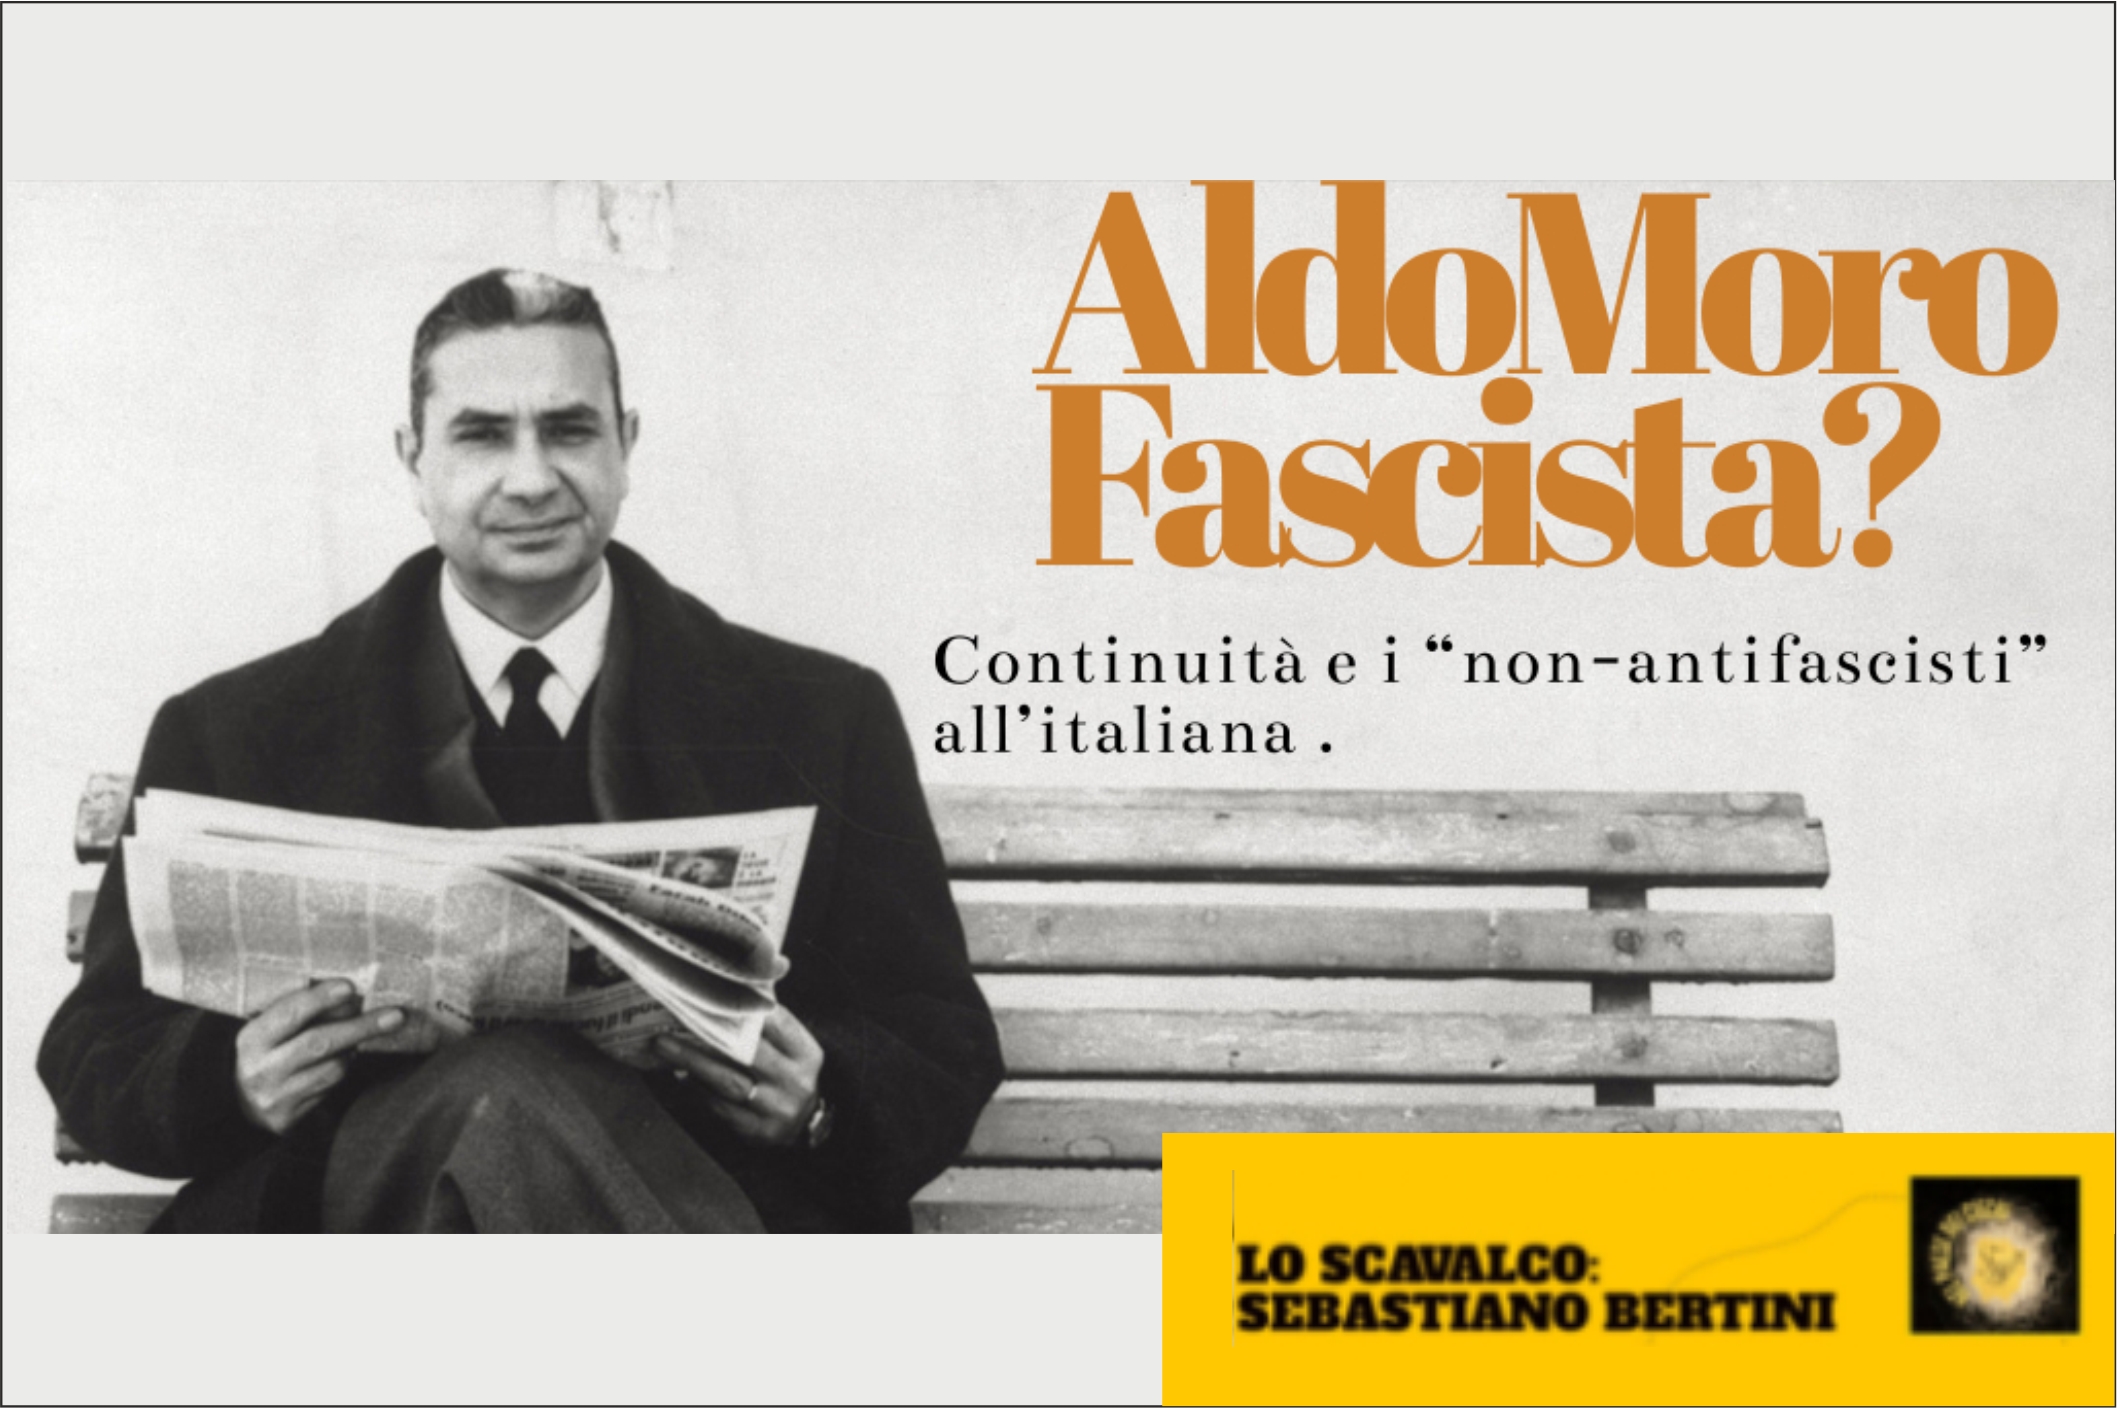 Aldo Moro Fascista? Continuità e i “non-antifascisti” all’italiana